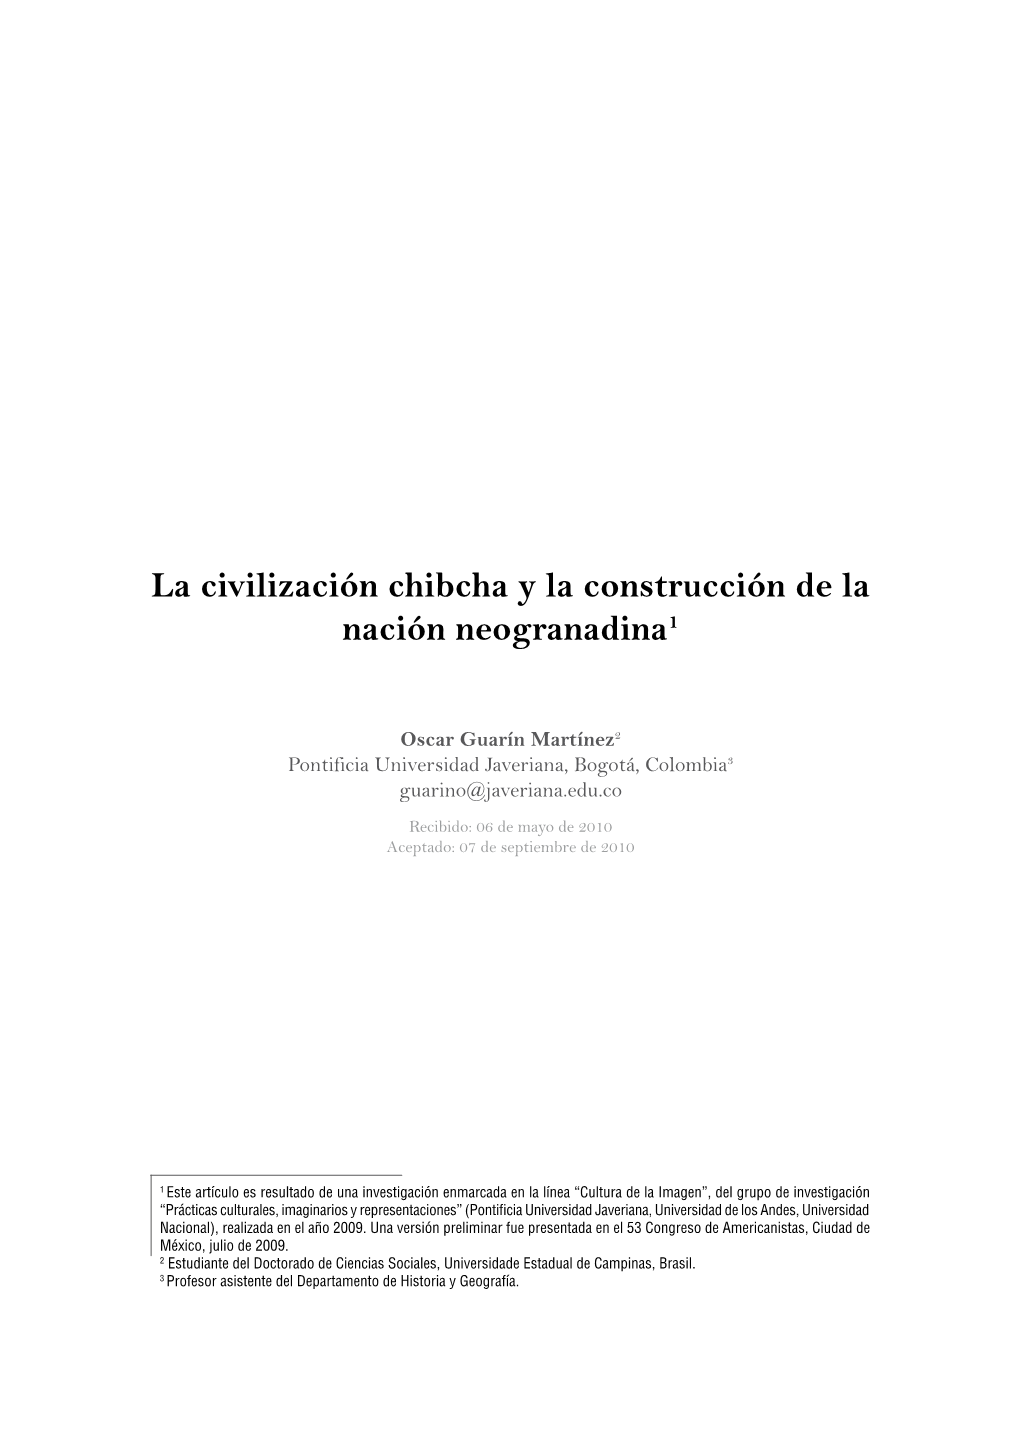 La Civilización Chibcha Y La Construcción De La Nación Neogranadina1